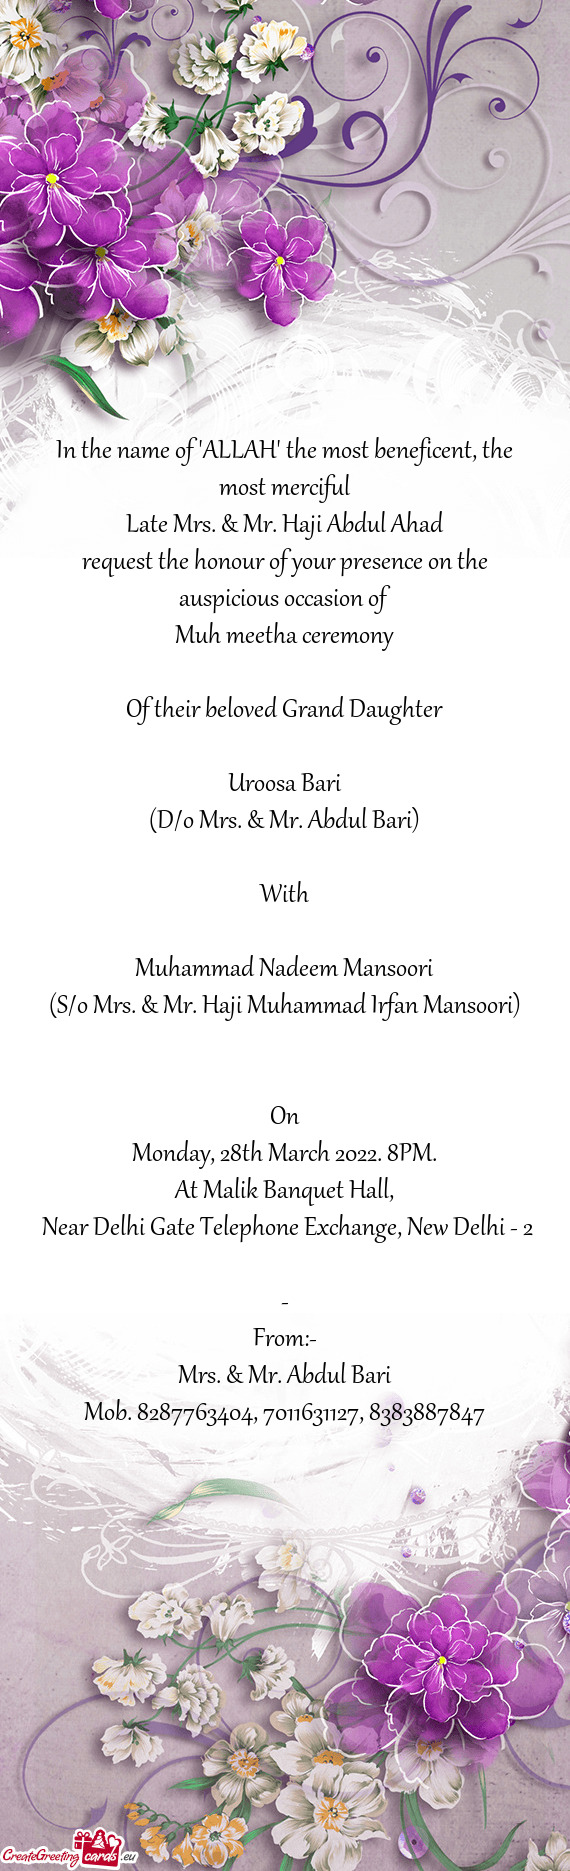 (S/o Mrs. & Mr. Haji Muhammad Irfan Mansoori)